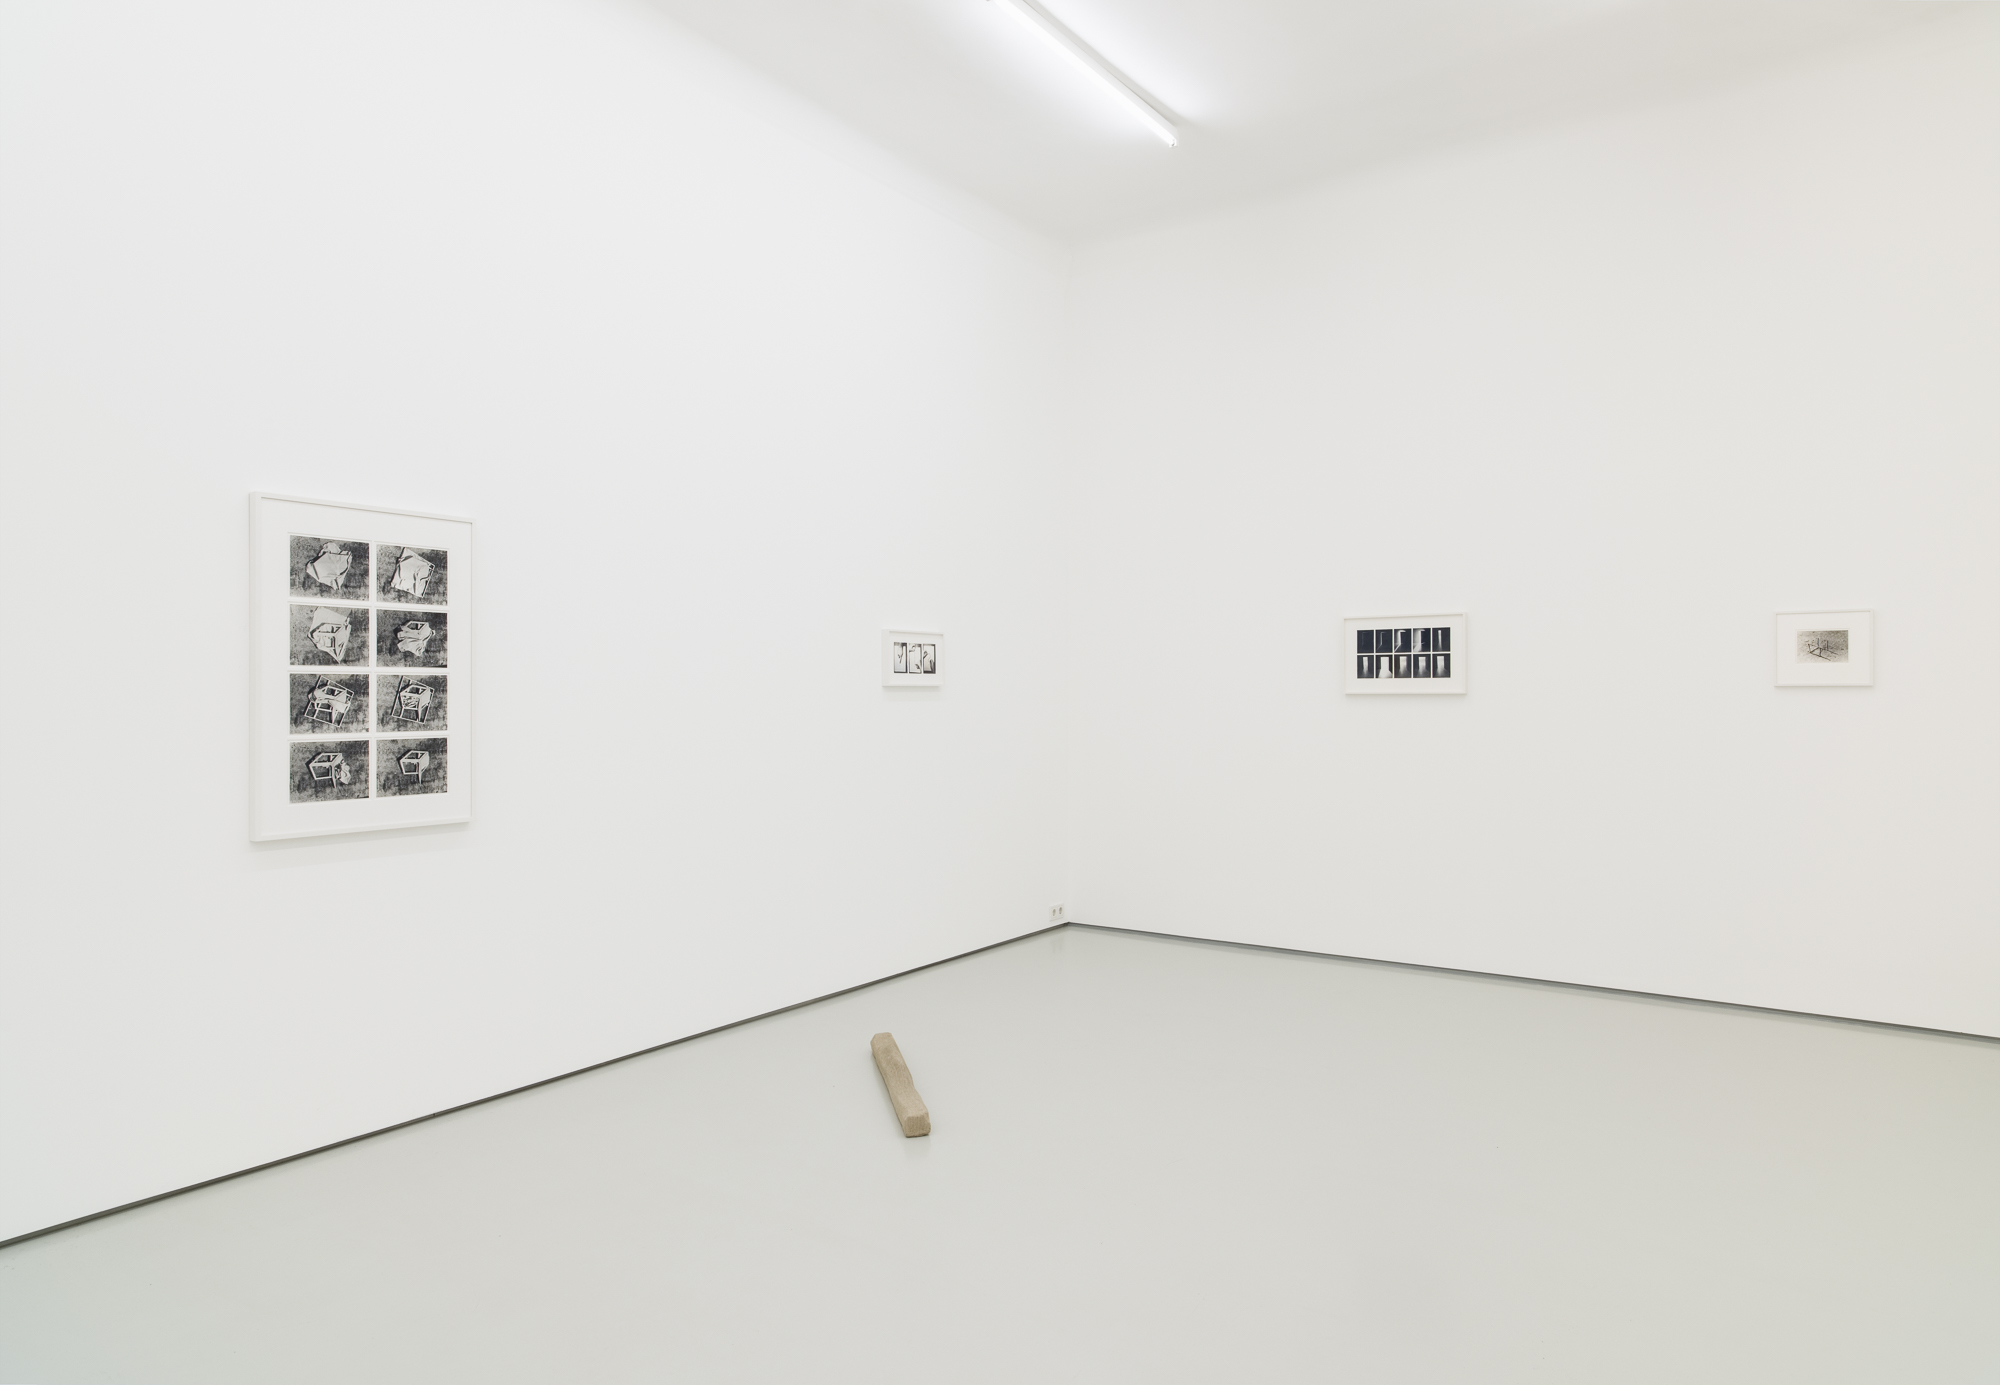 Ferenc Ficzek, Exits Left Behind, exhibition view, Gregor Podnar, Berlin, 2019. Photo: Marcus Schneider.